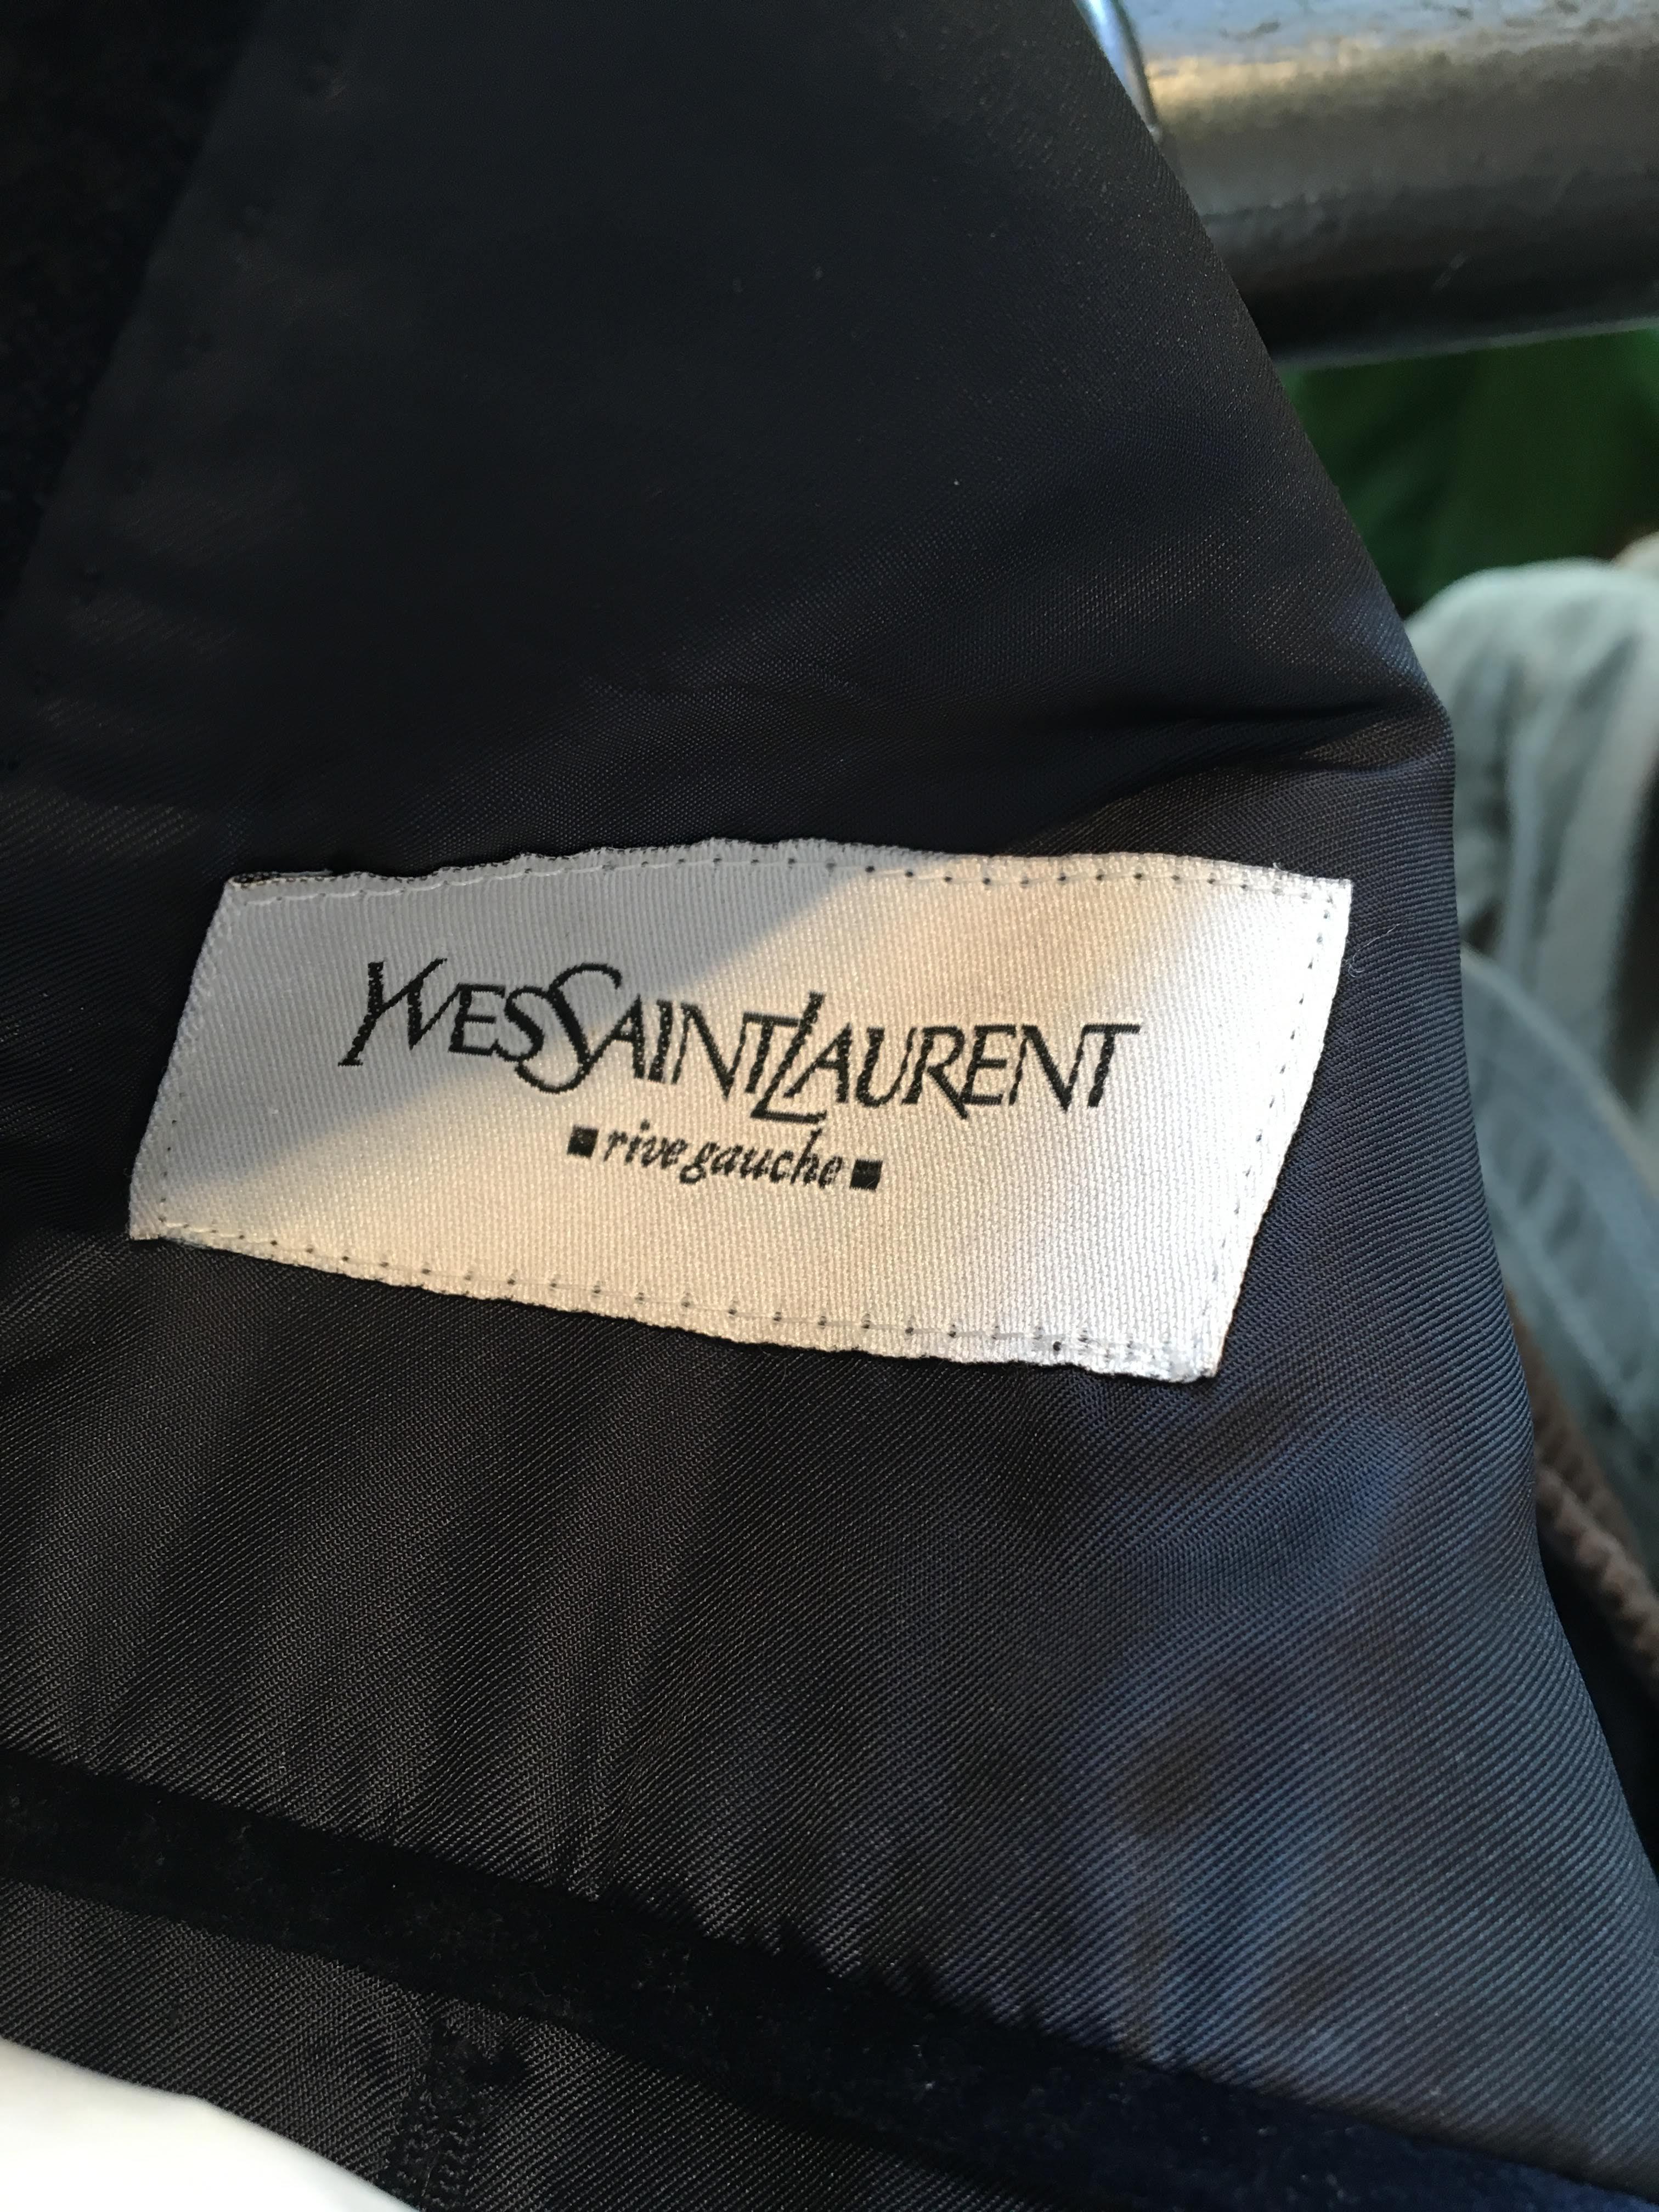 Yves Saint Laurent velvet navy blazer. 4